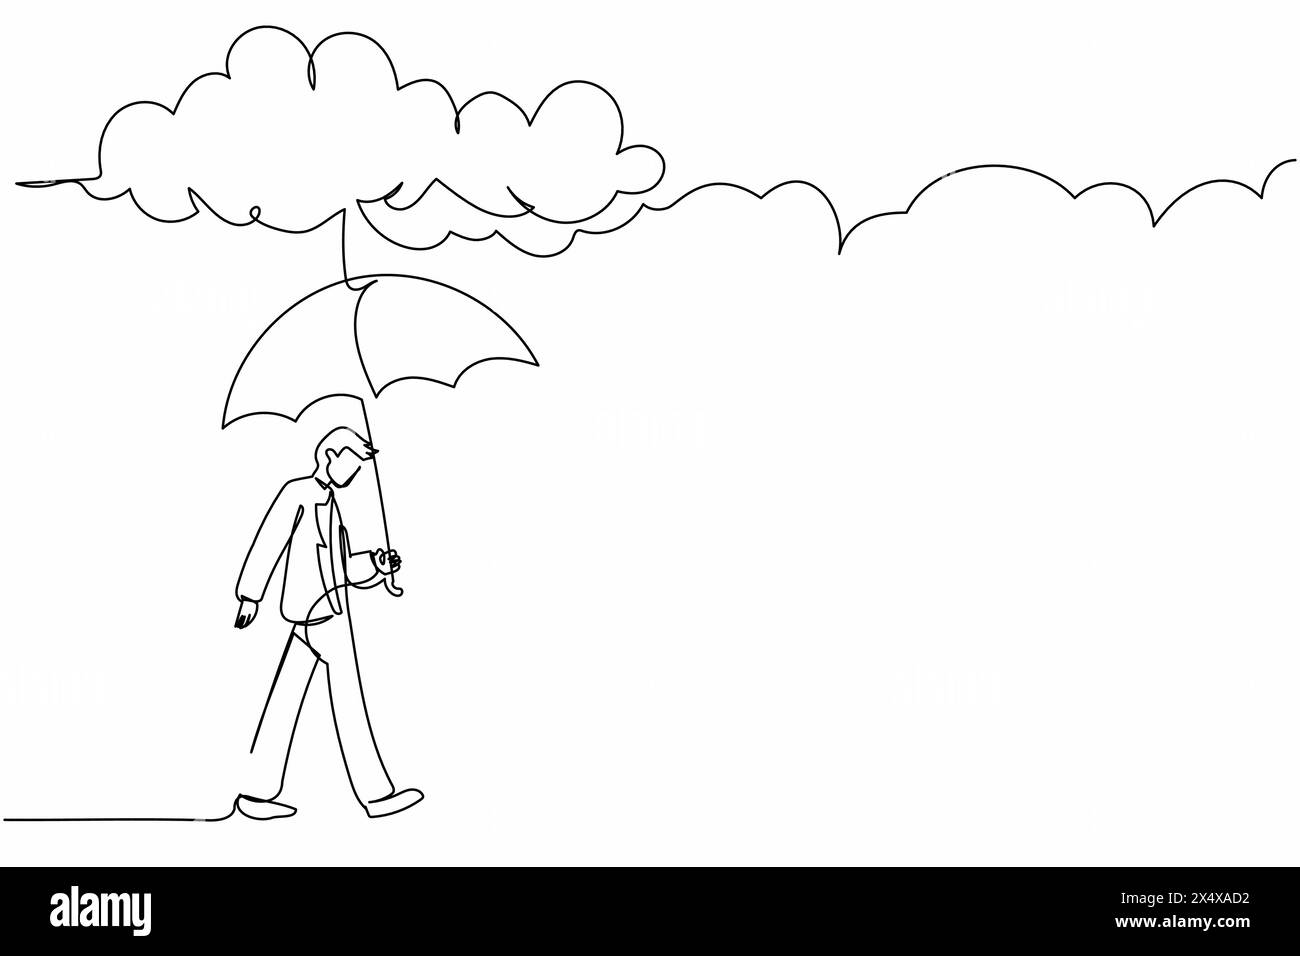 Linea singola continua che disegna un uomo d'affari che cammina con un ombrello sotto le nuvole di pioggia. Depressione, passante con il tempo piovoso. Uomo inzuppato, l'acqua viene versata Illustrazione Vettoriale